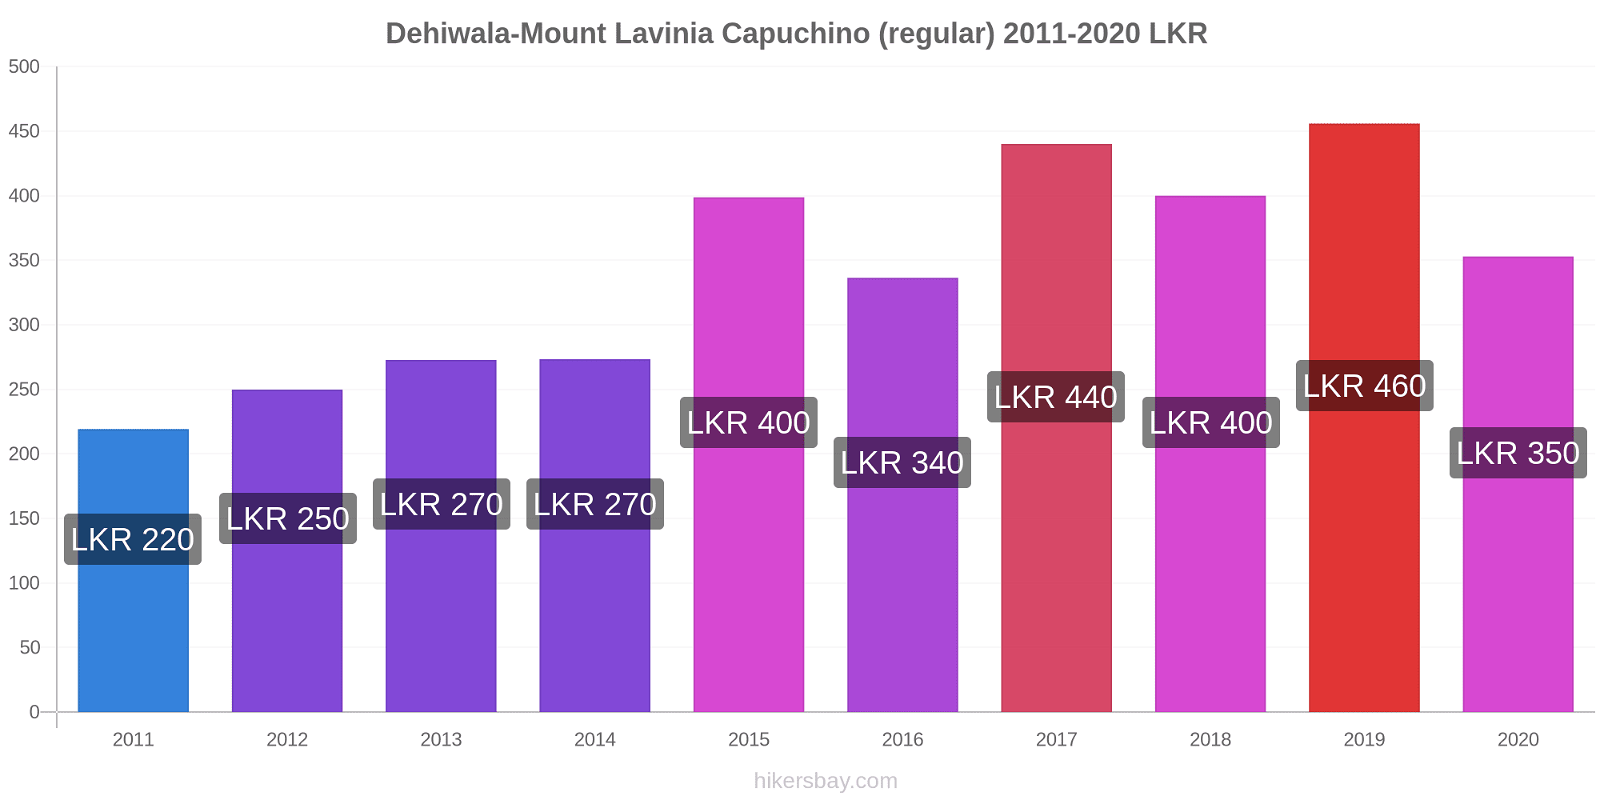 Dehiwala-Mount Lavinia cambios de precios Capuchino (regular) hikersbay.com